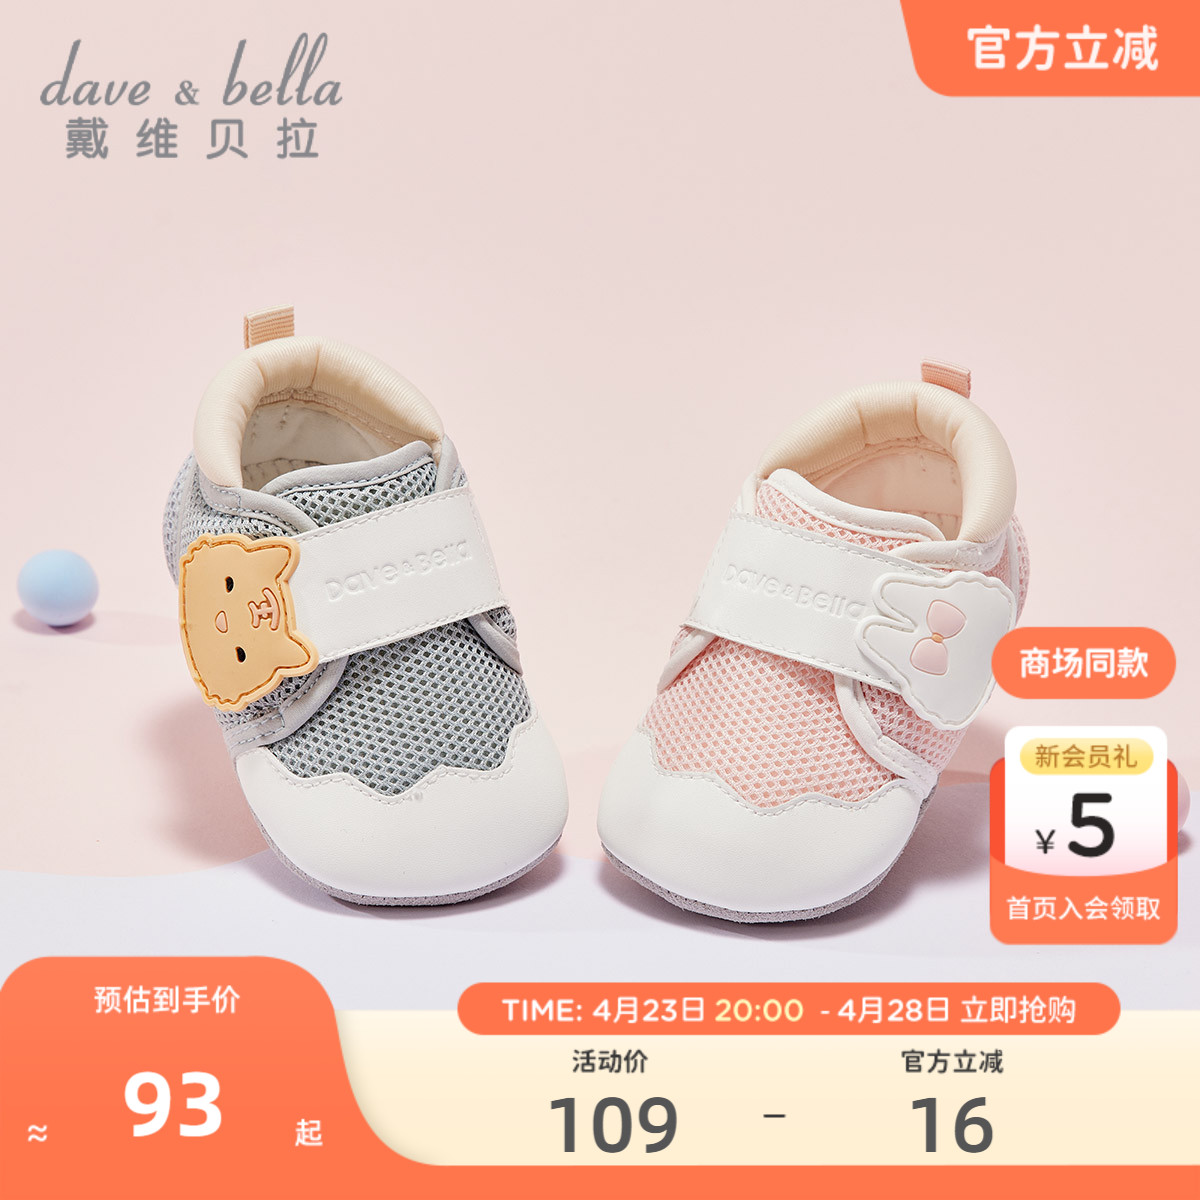 6月男女宝宝软底室内鞋 新年春0 商场同款 戴维贝拉婴儿步前鞋